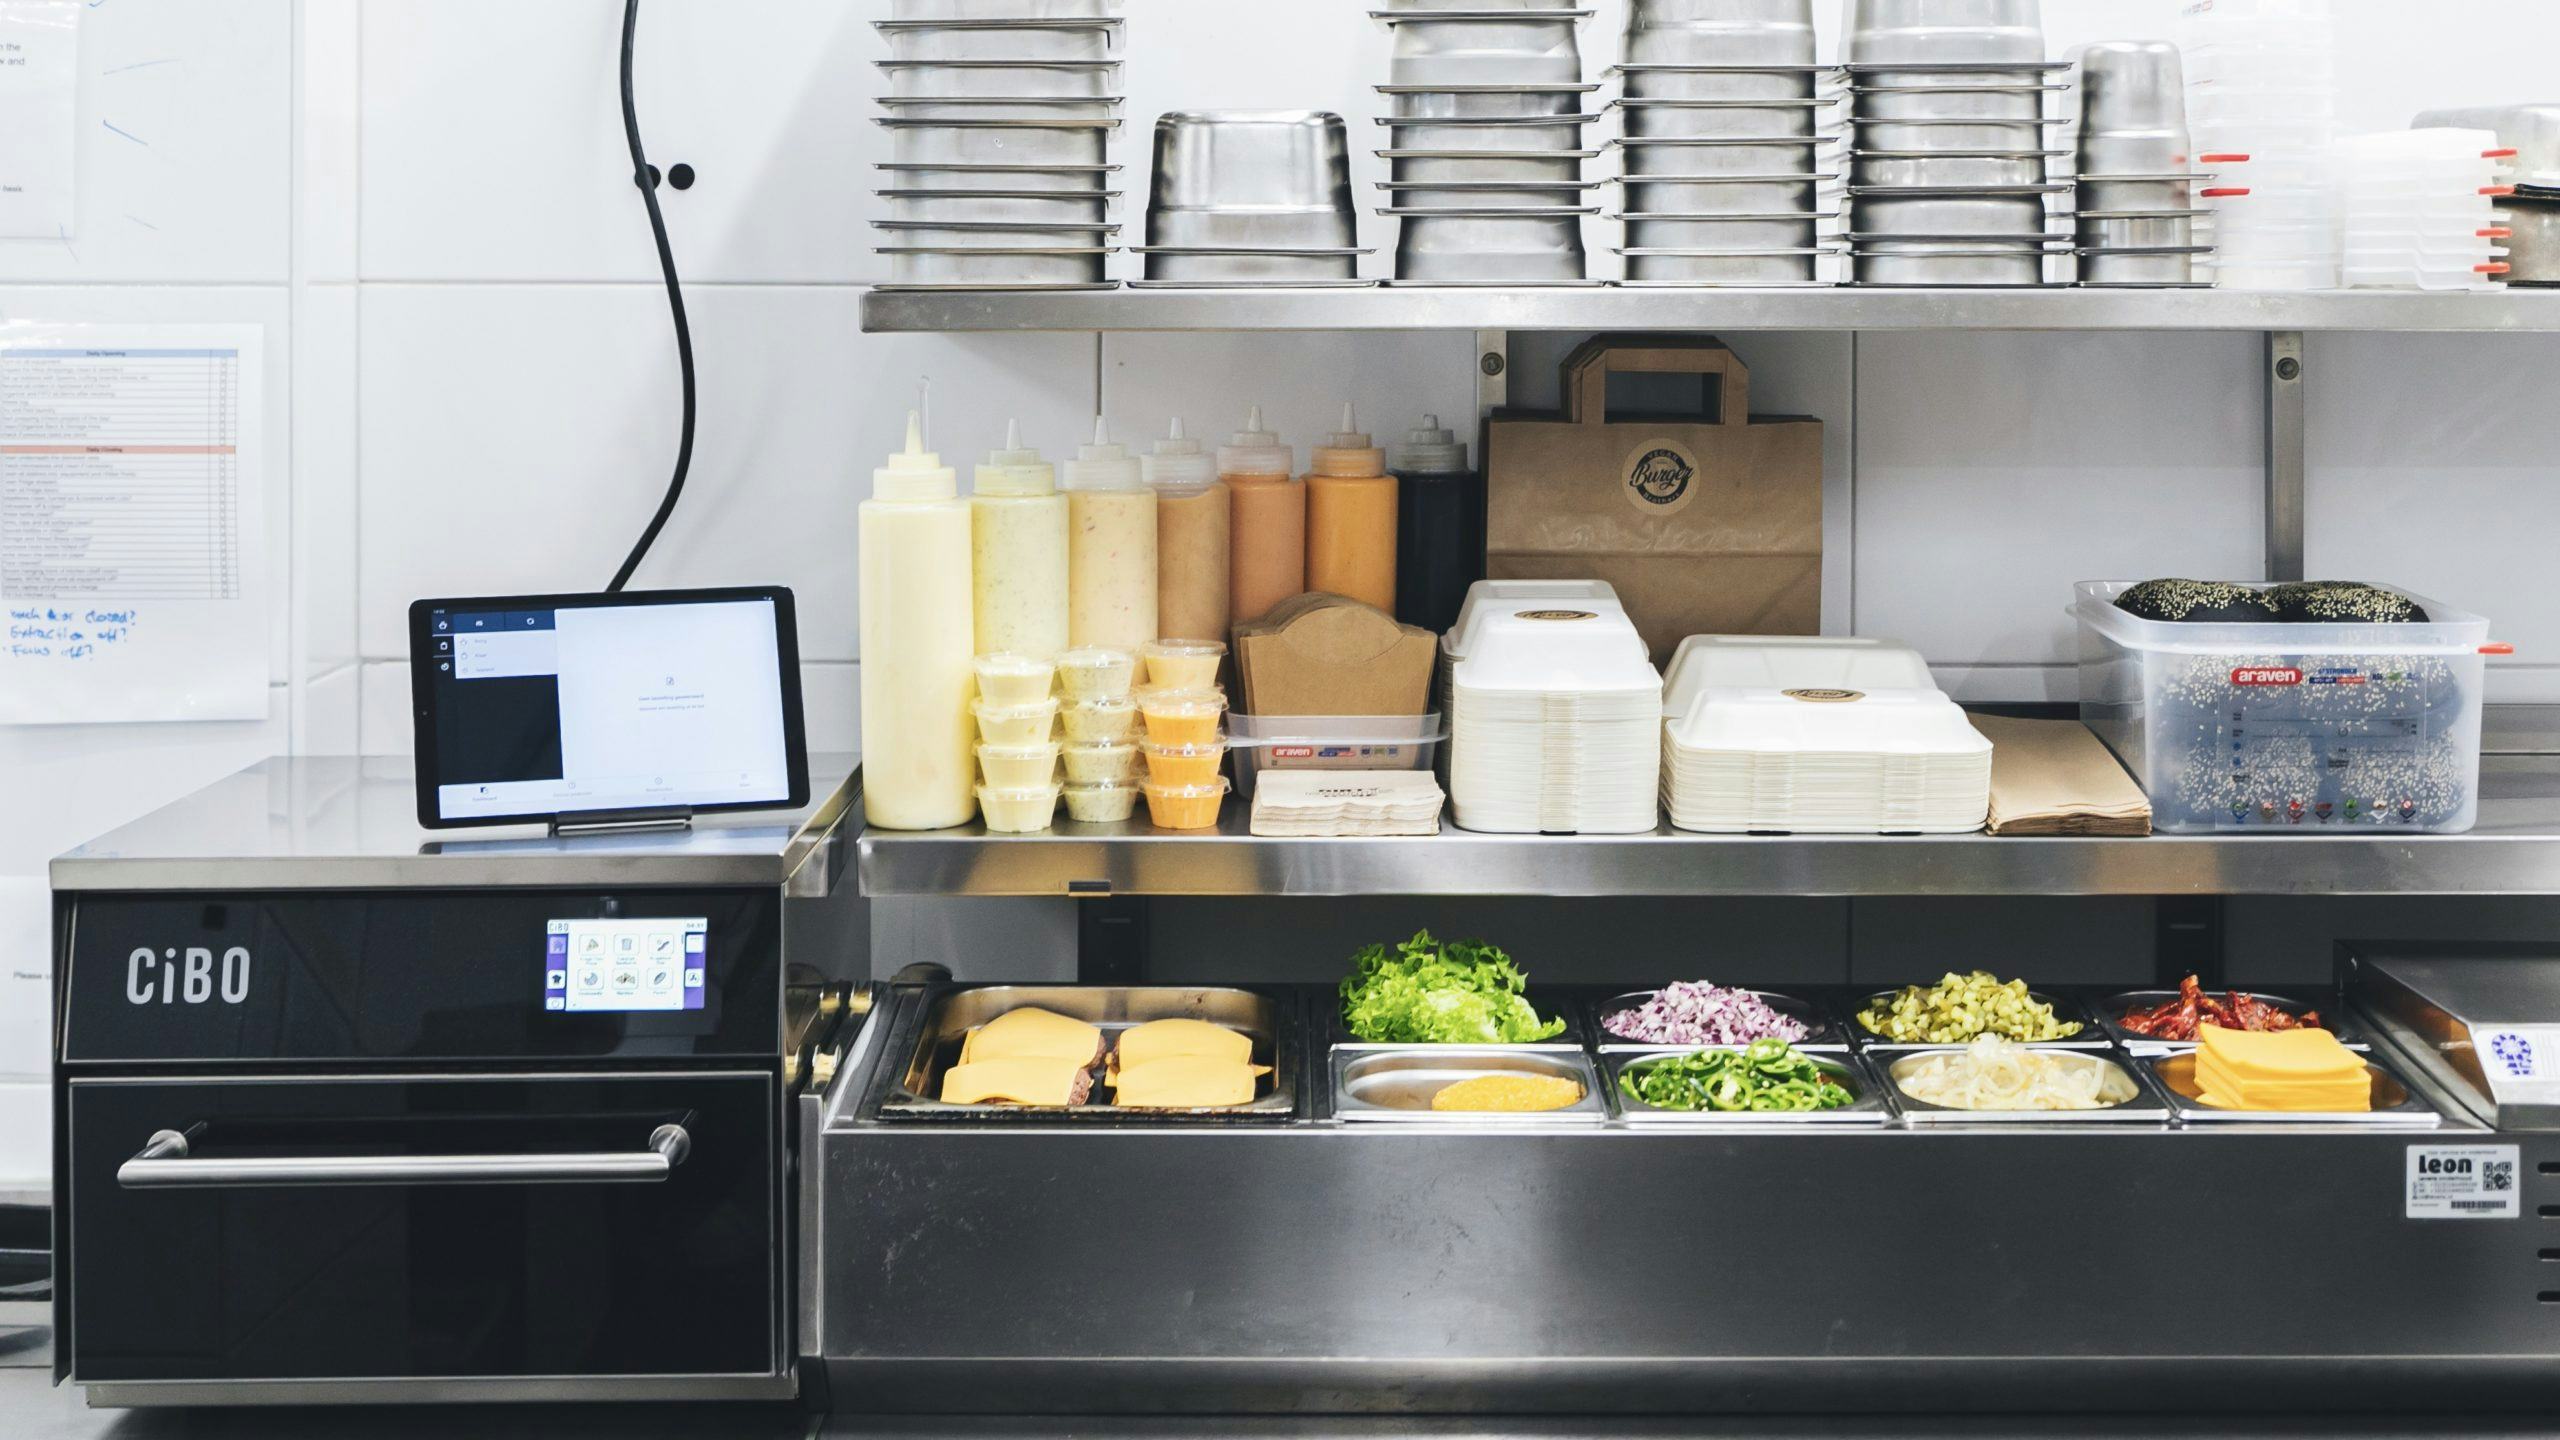 Vegan bezorgconcept zoekt ondernemers met keukencapaciteit